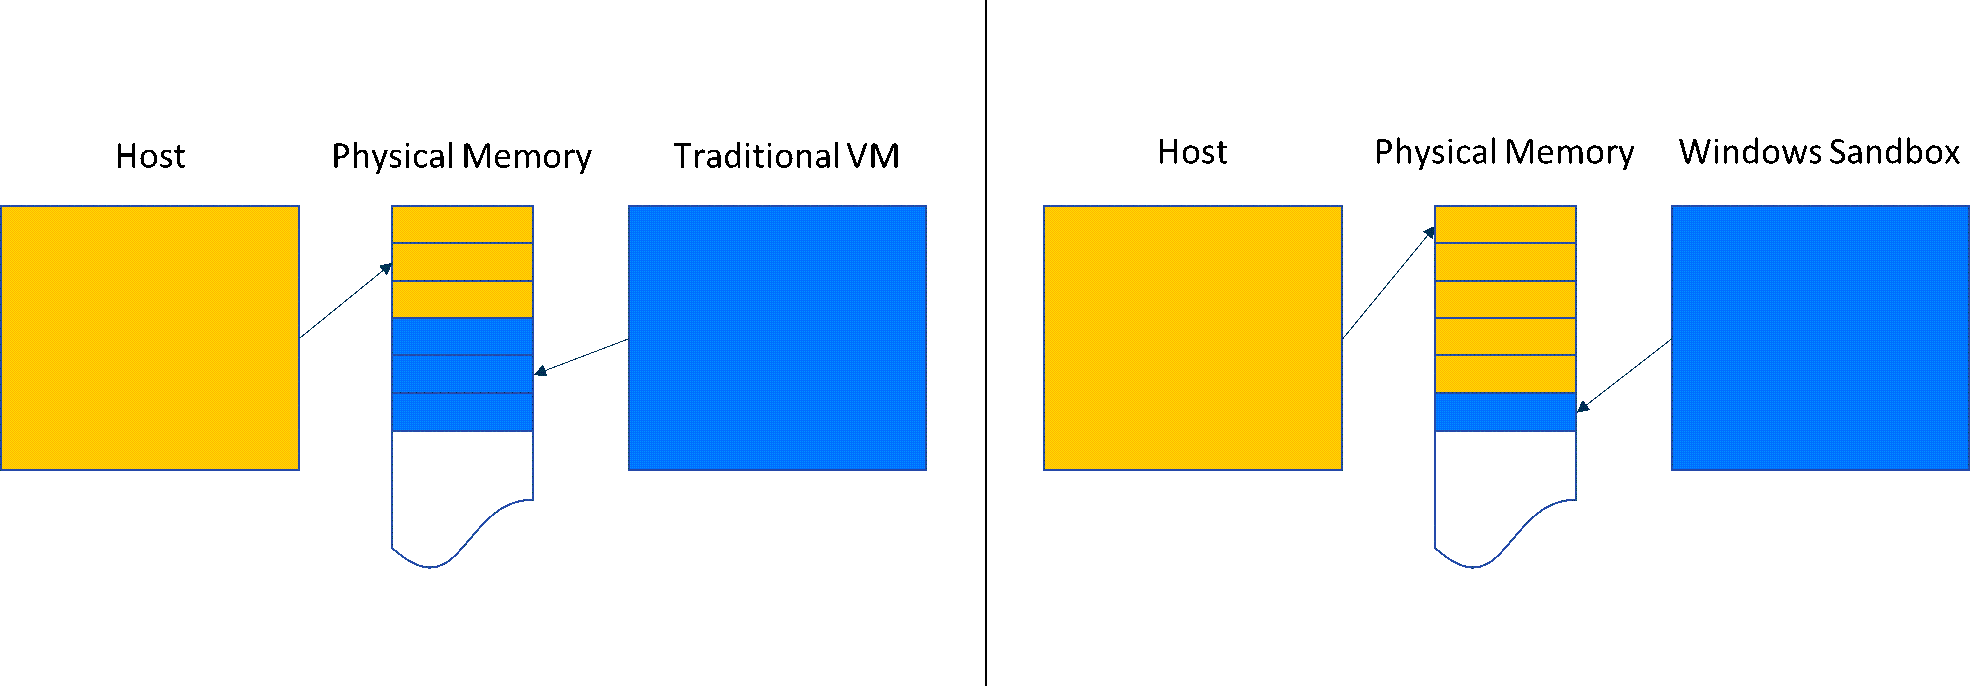 圖表會比較 Windows 沙箱 與傳統 VM 中的記憶體共用。